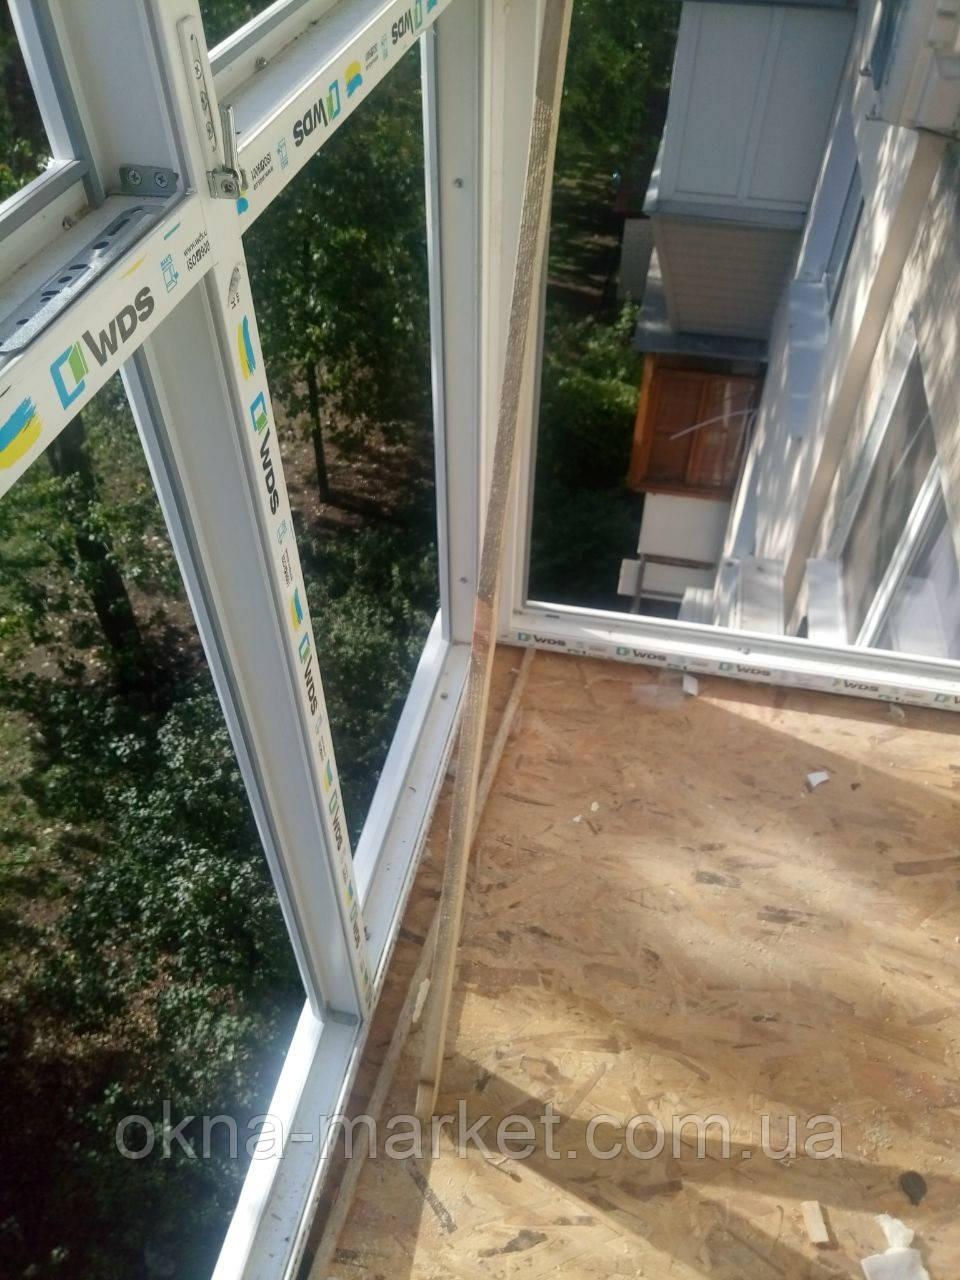 Бюджетное остекление балкона под ключ Бровары, фото 8